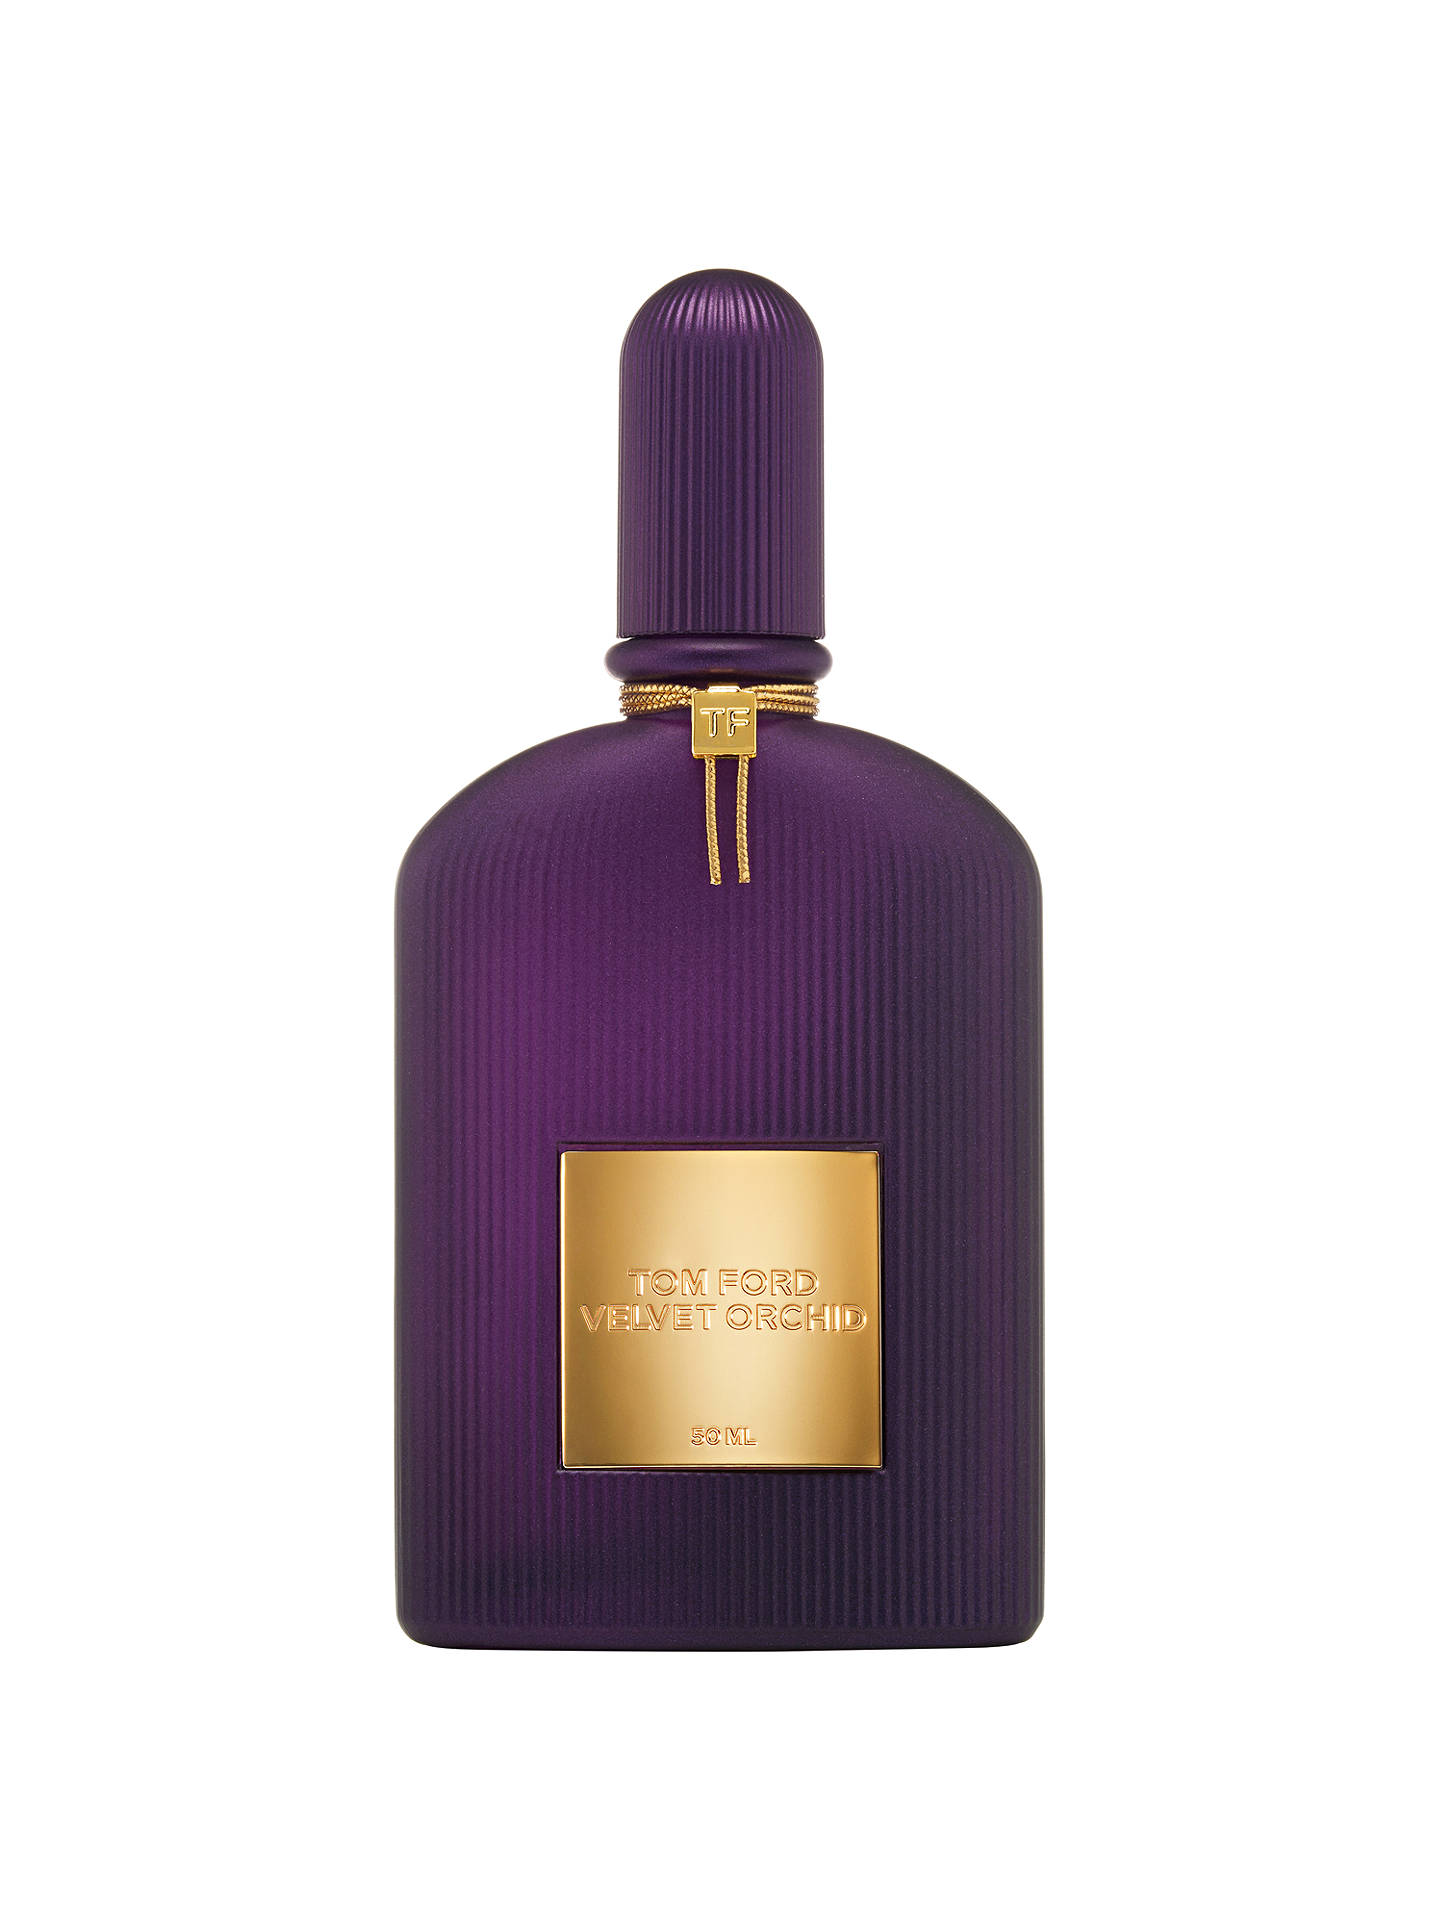 TOM FORD Velvet Orchid Lumière Eau de Parfum at John Lewis & Partners